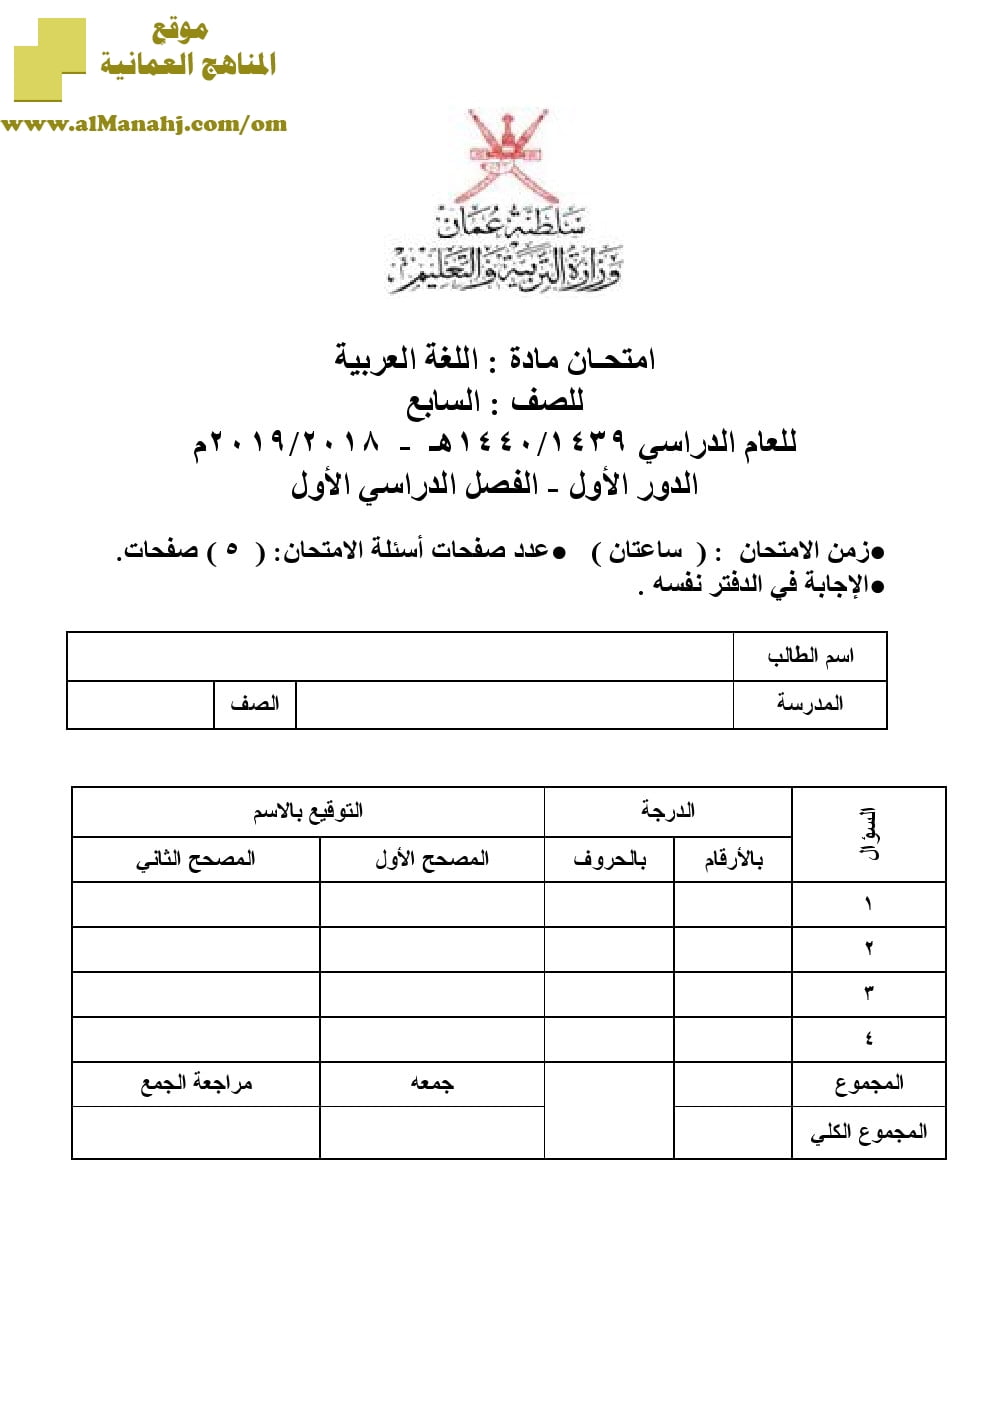 أسئلة وإجابة الامتحان الرسمي للفصل الدراسي الأول الدور الأول والثاني ~ (لغة عربية) السابع